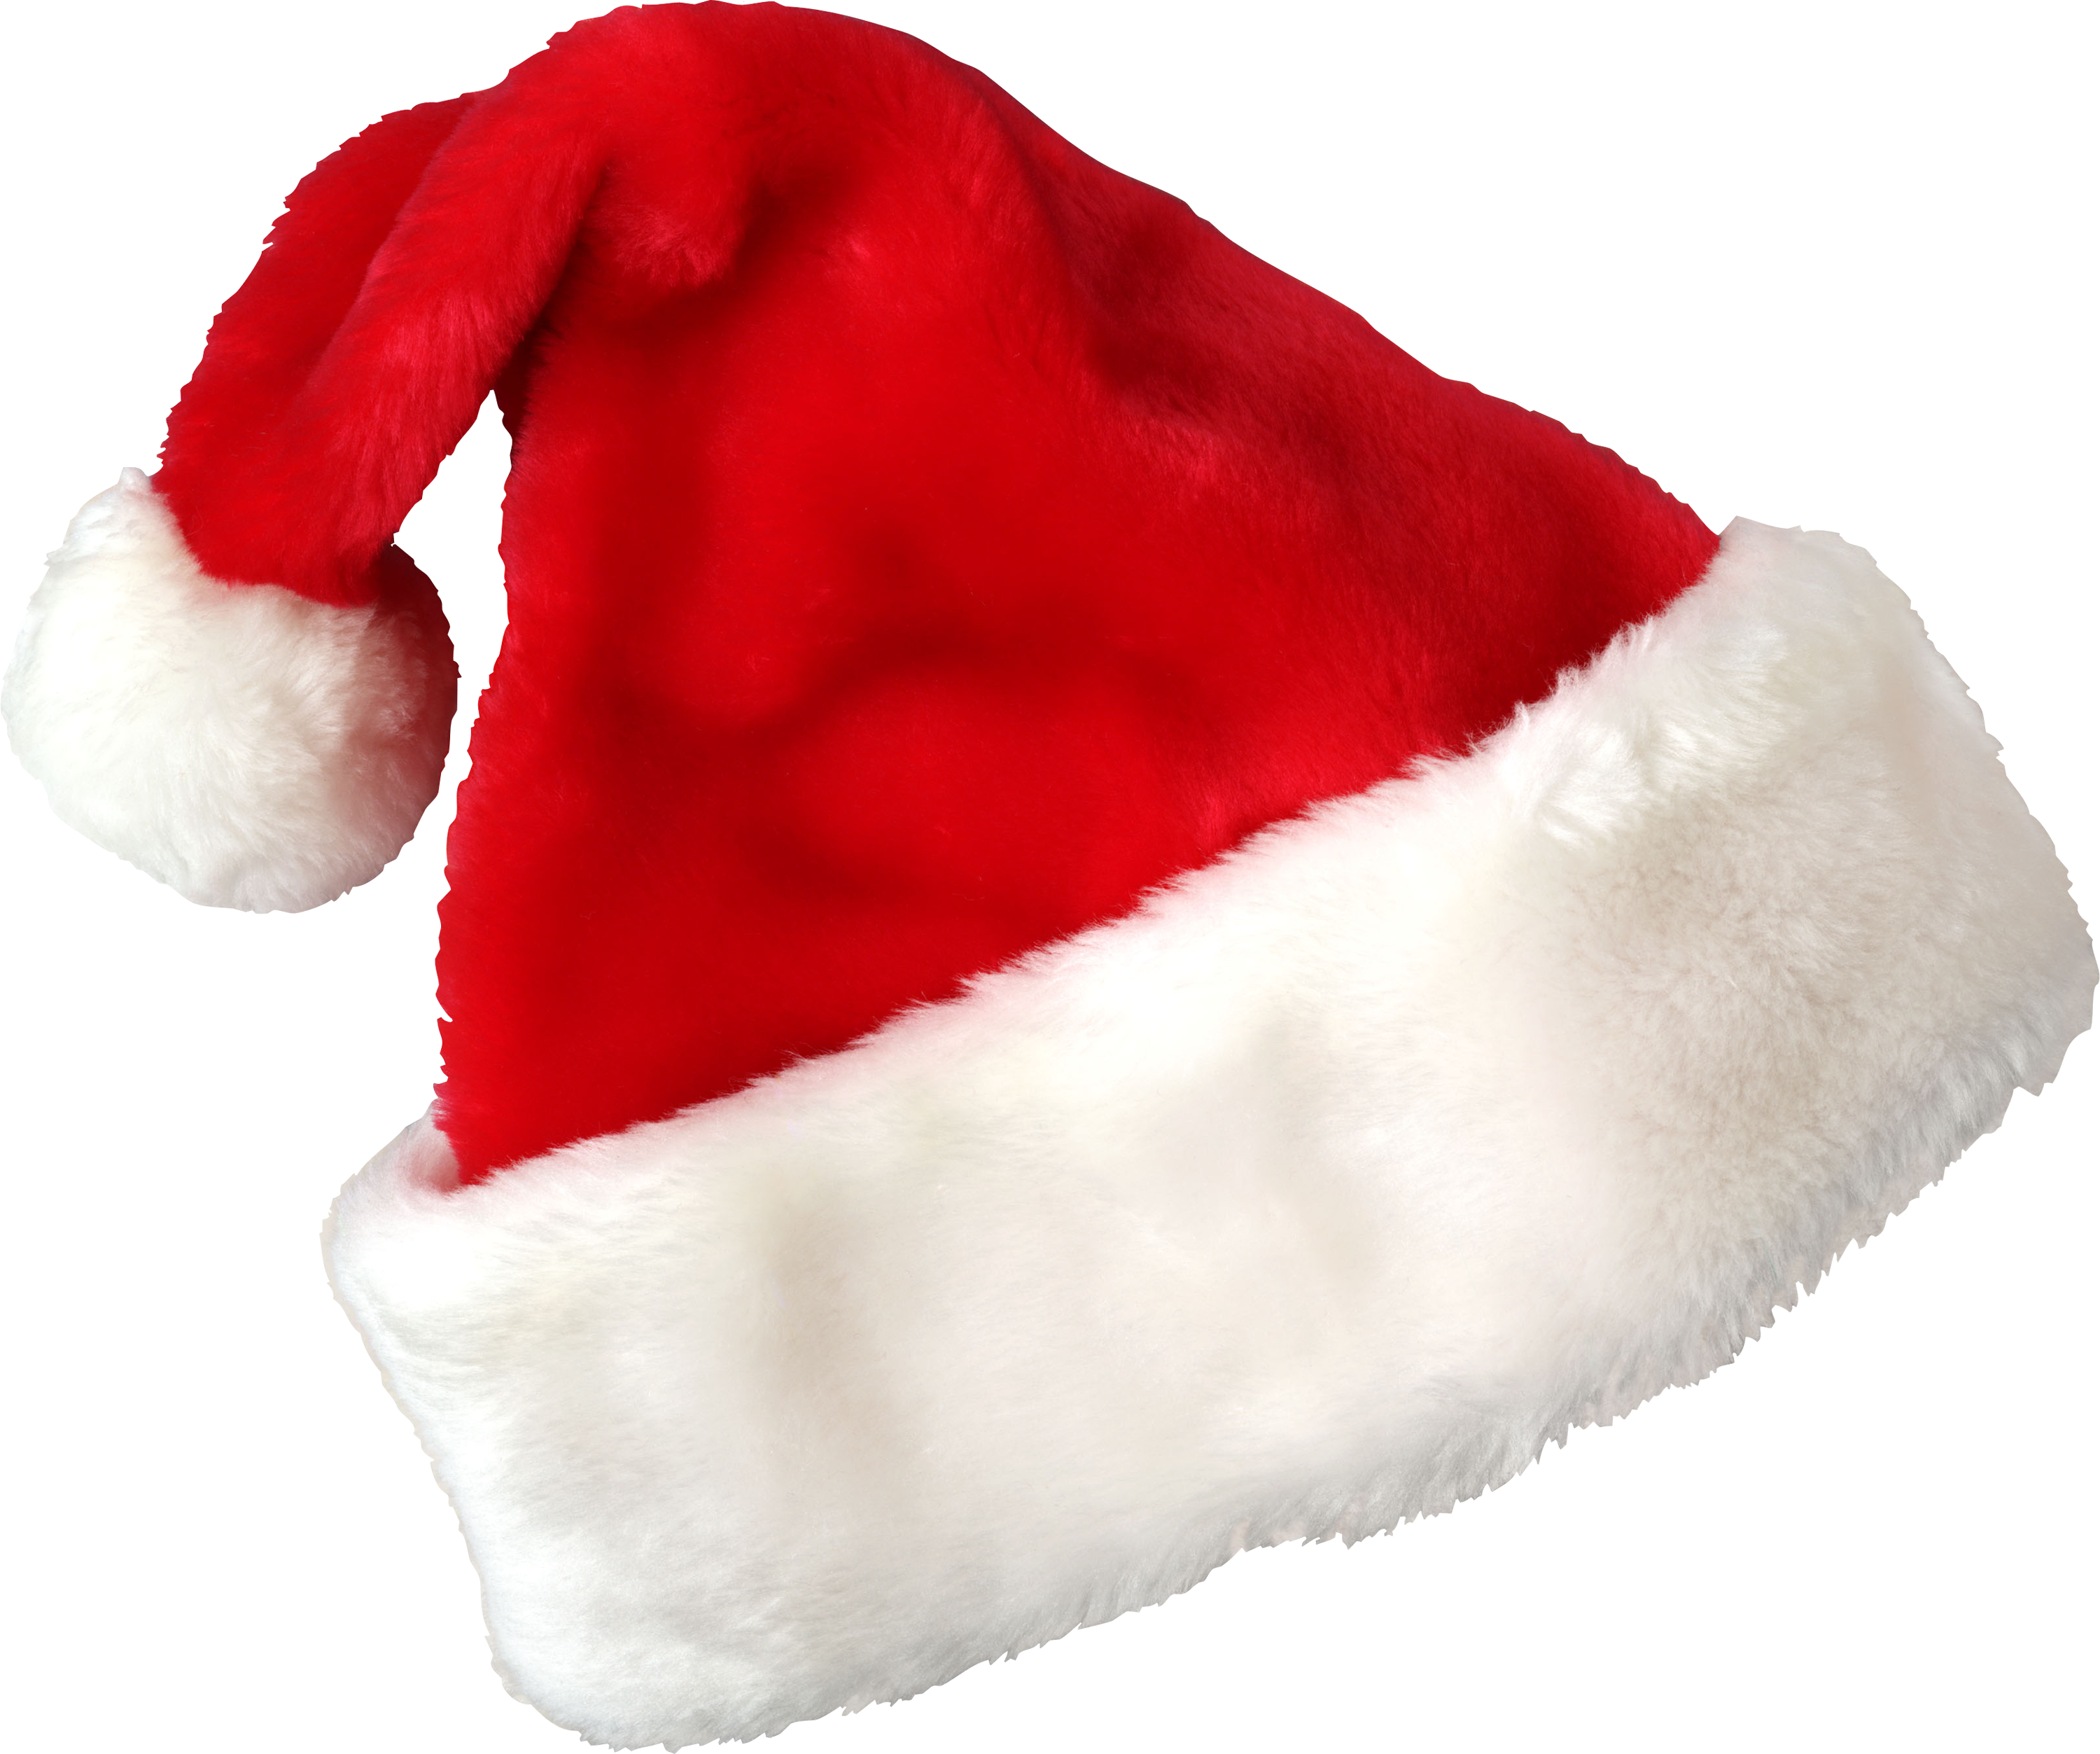 红帽子圣诞圣诞老人